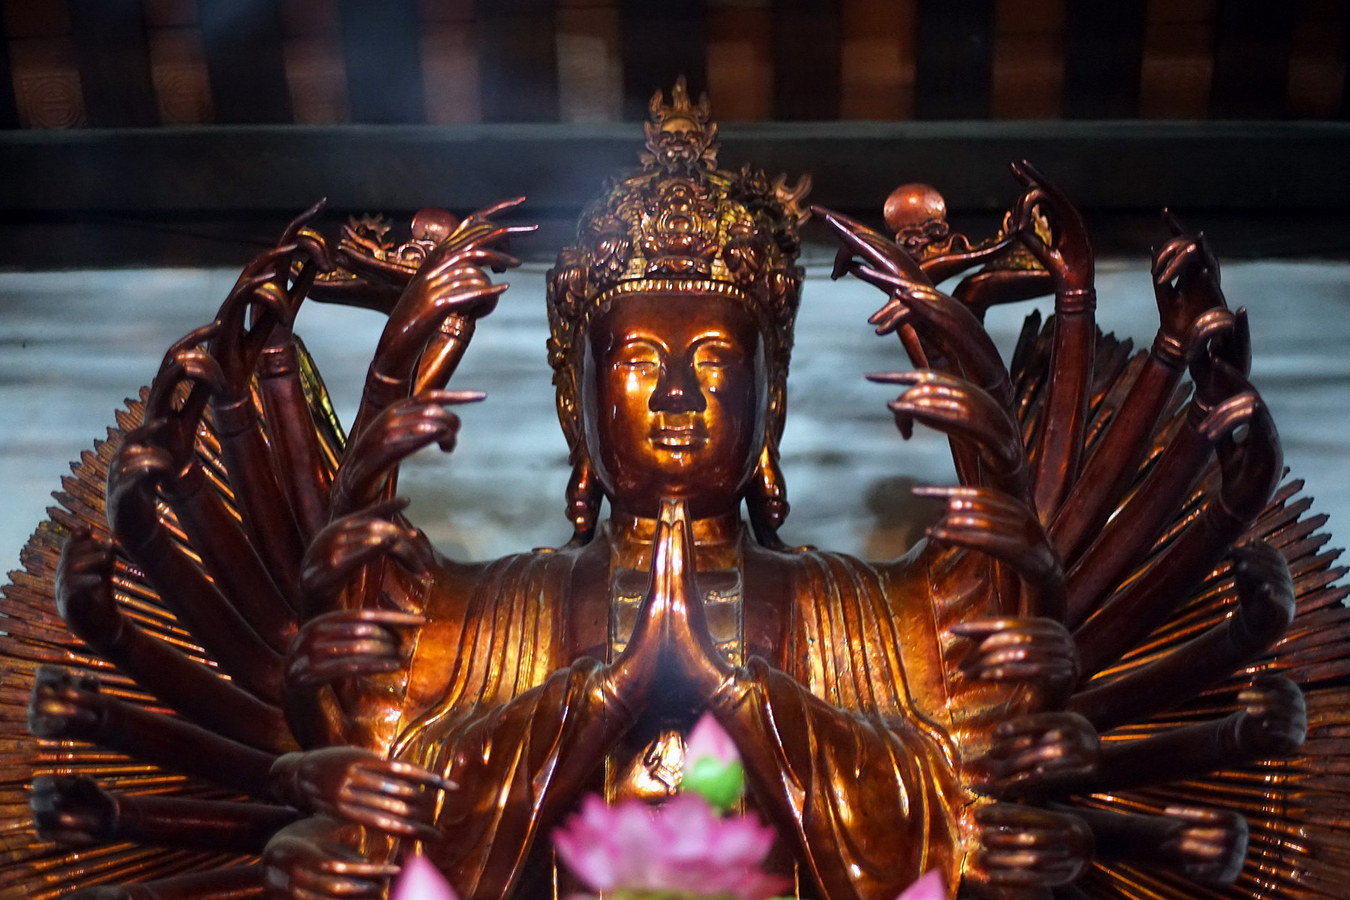 Chùm ảnh: Ngắm kiệt tác tượng Phật thiên thủ thiên nhãn cổ nhất Việt Nam